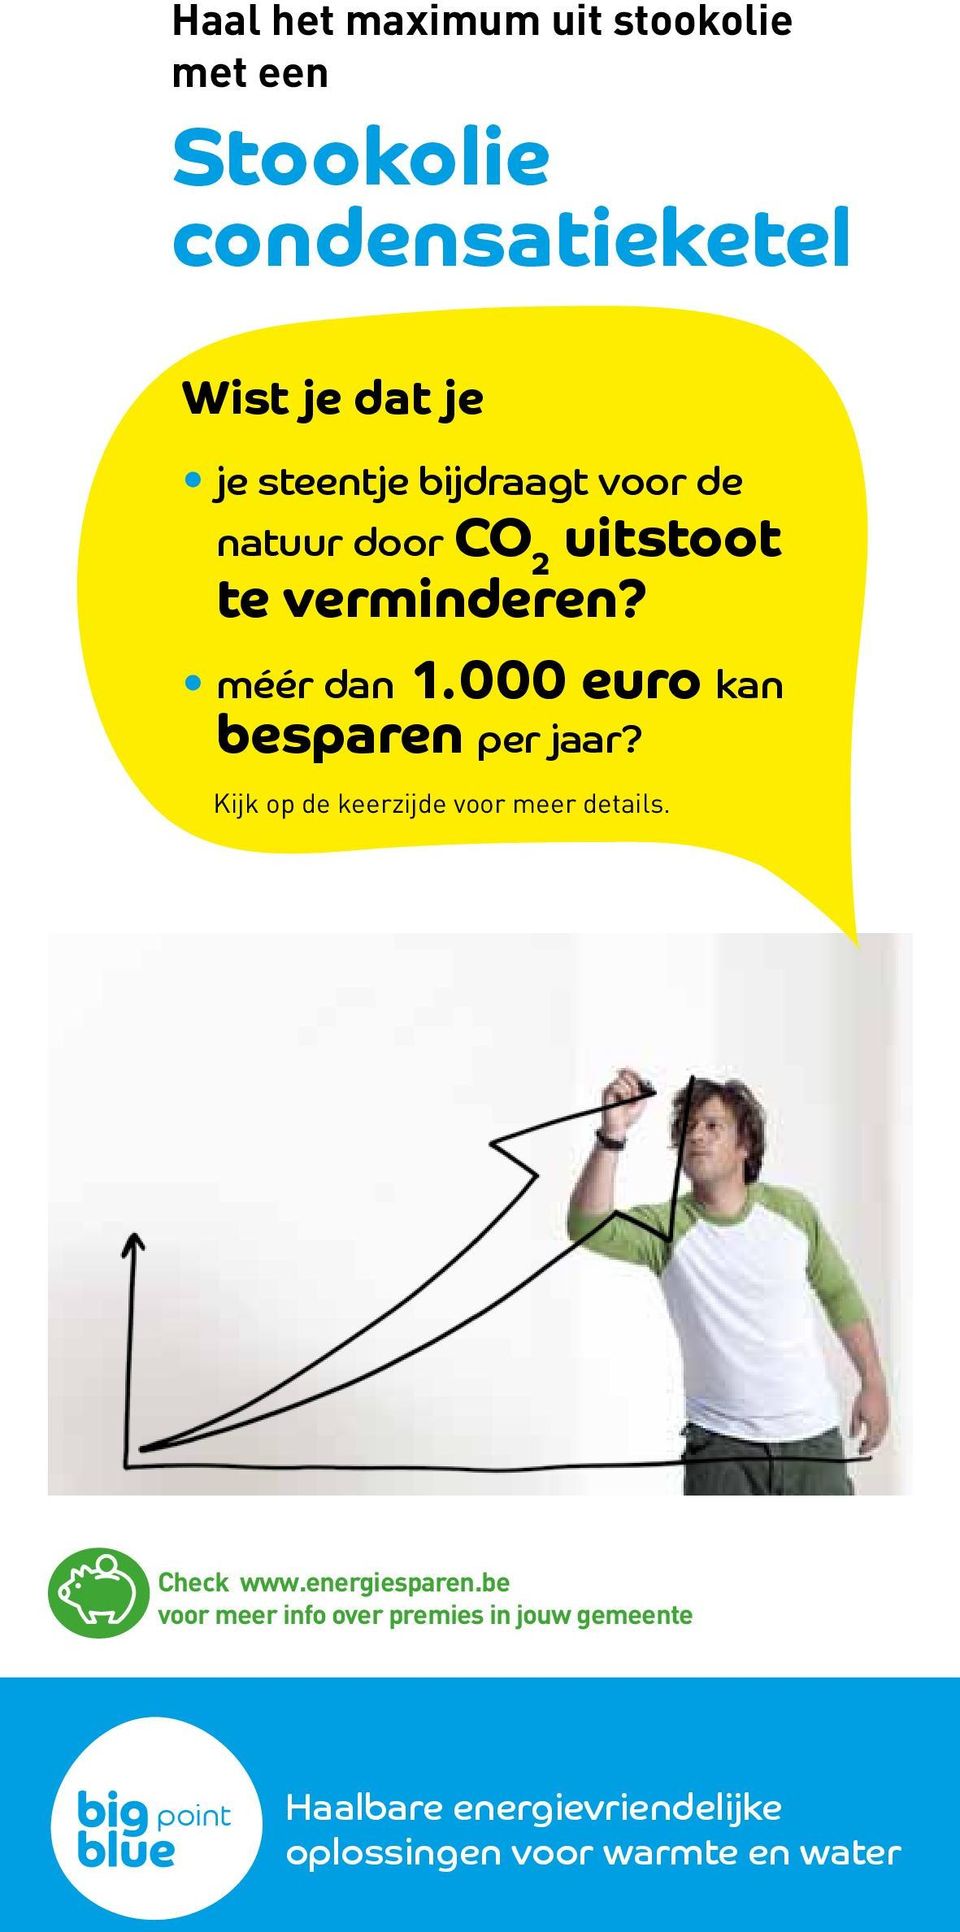 000 euro kan besparen per jaar? Kijk op de keerzijde voor meer details. Check www.